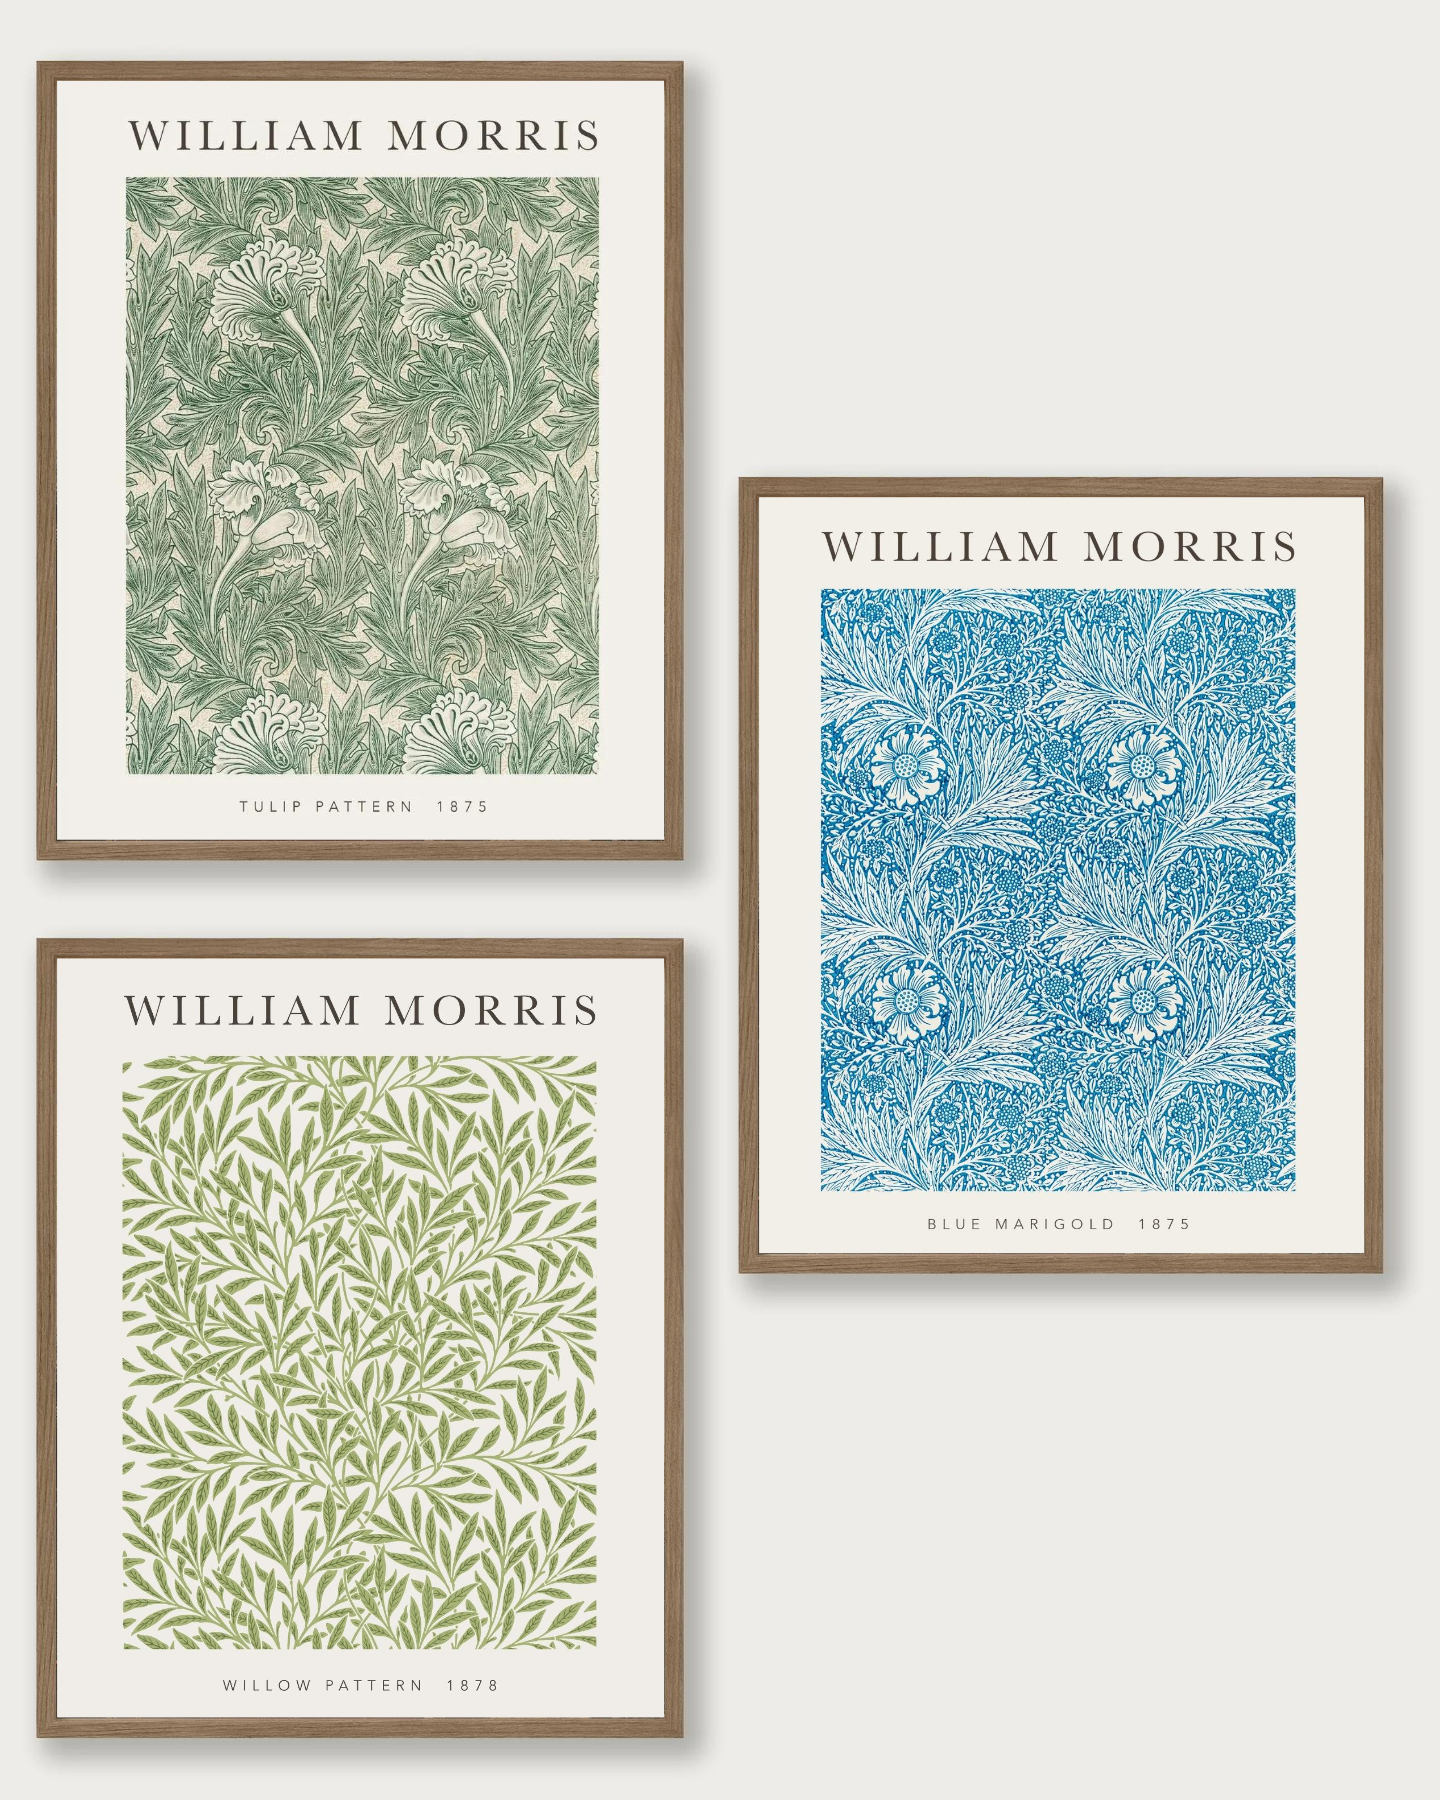 William Morris Set of 3 Prints